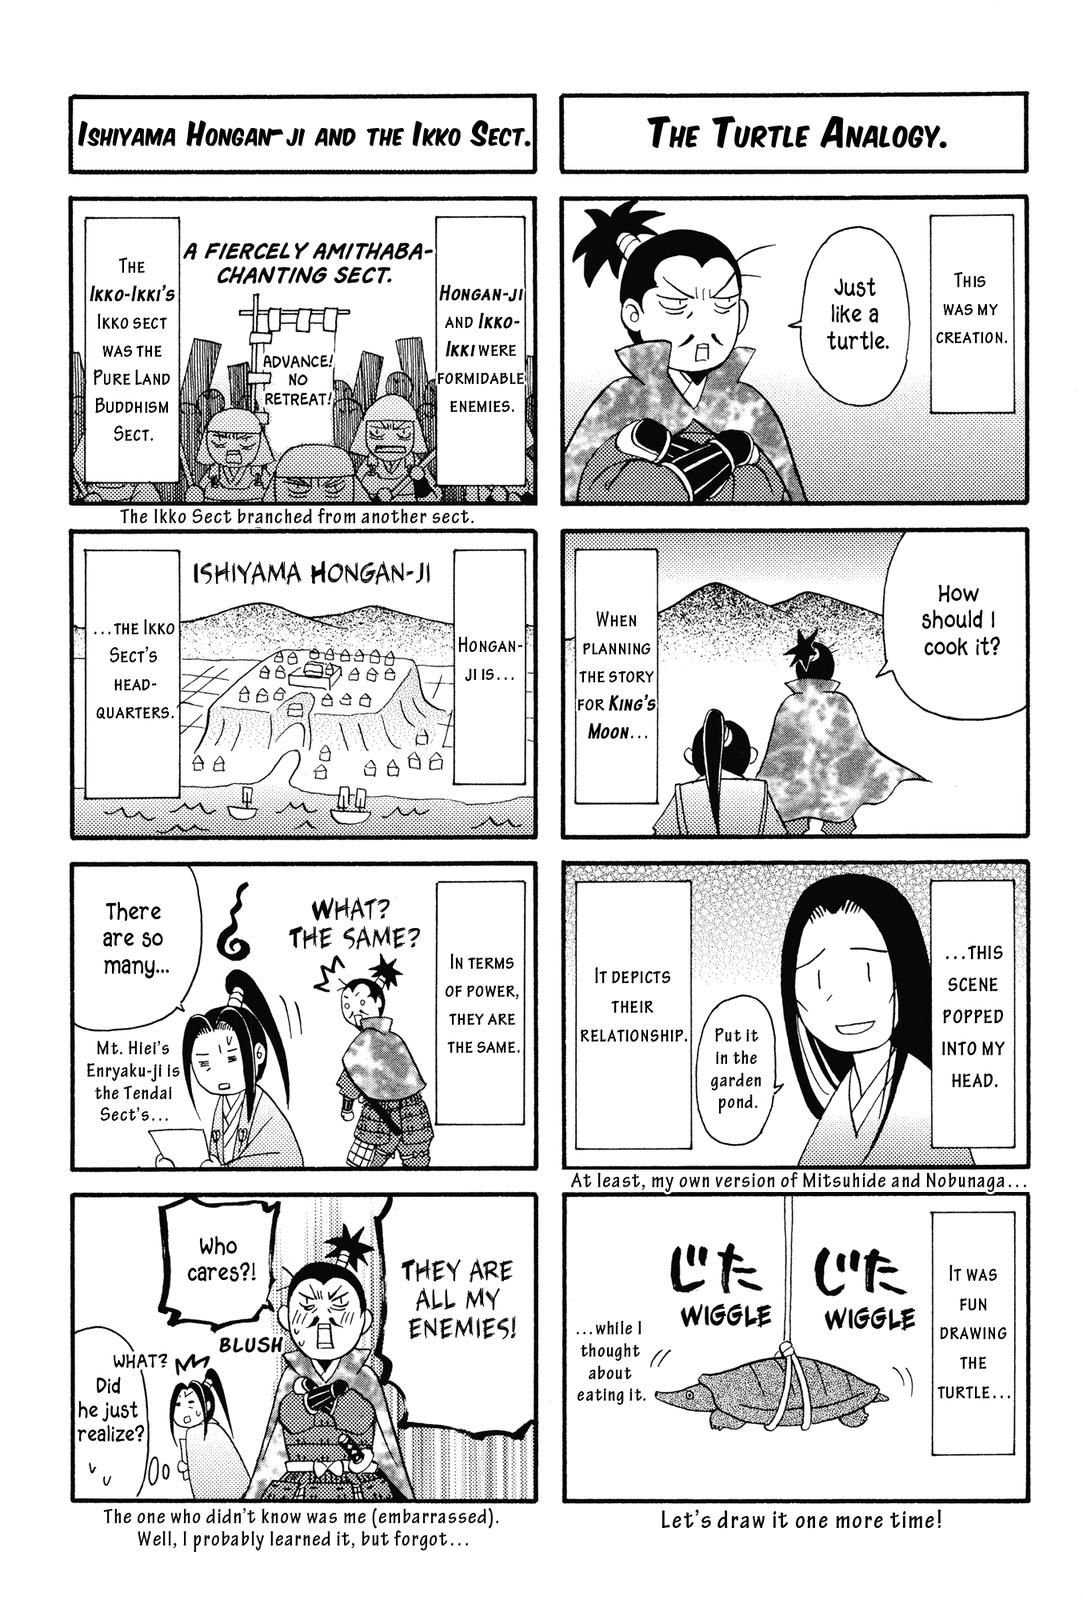 Haou no Tsuki Akechi Mitsuhide Shougai Vol. 1 Ch. 5.5 Bonus Comic Shorts